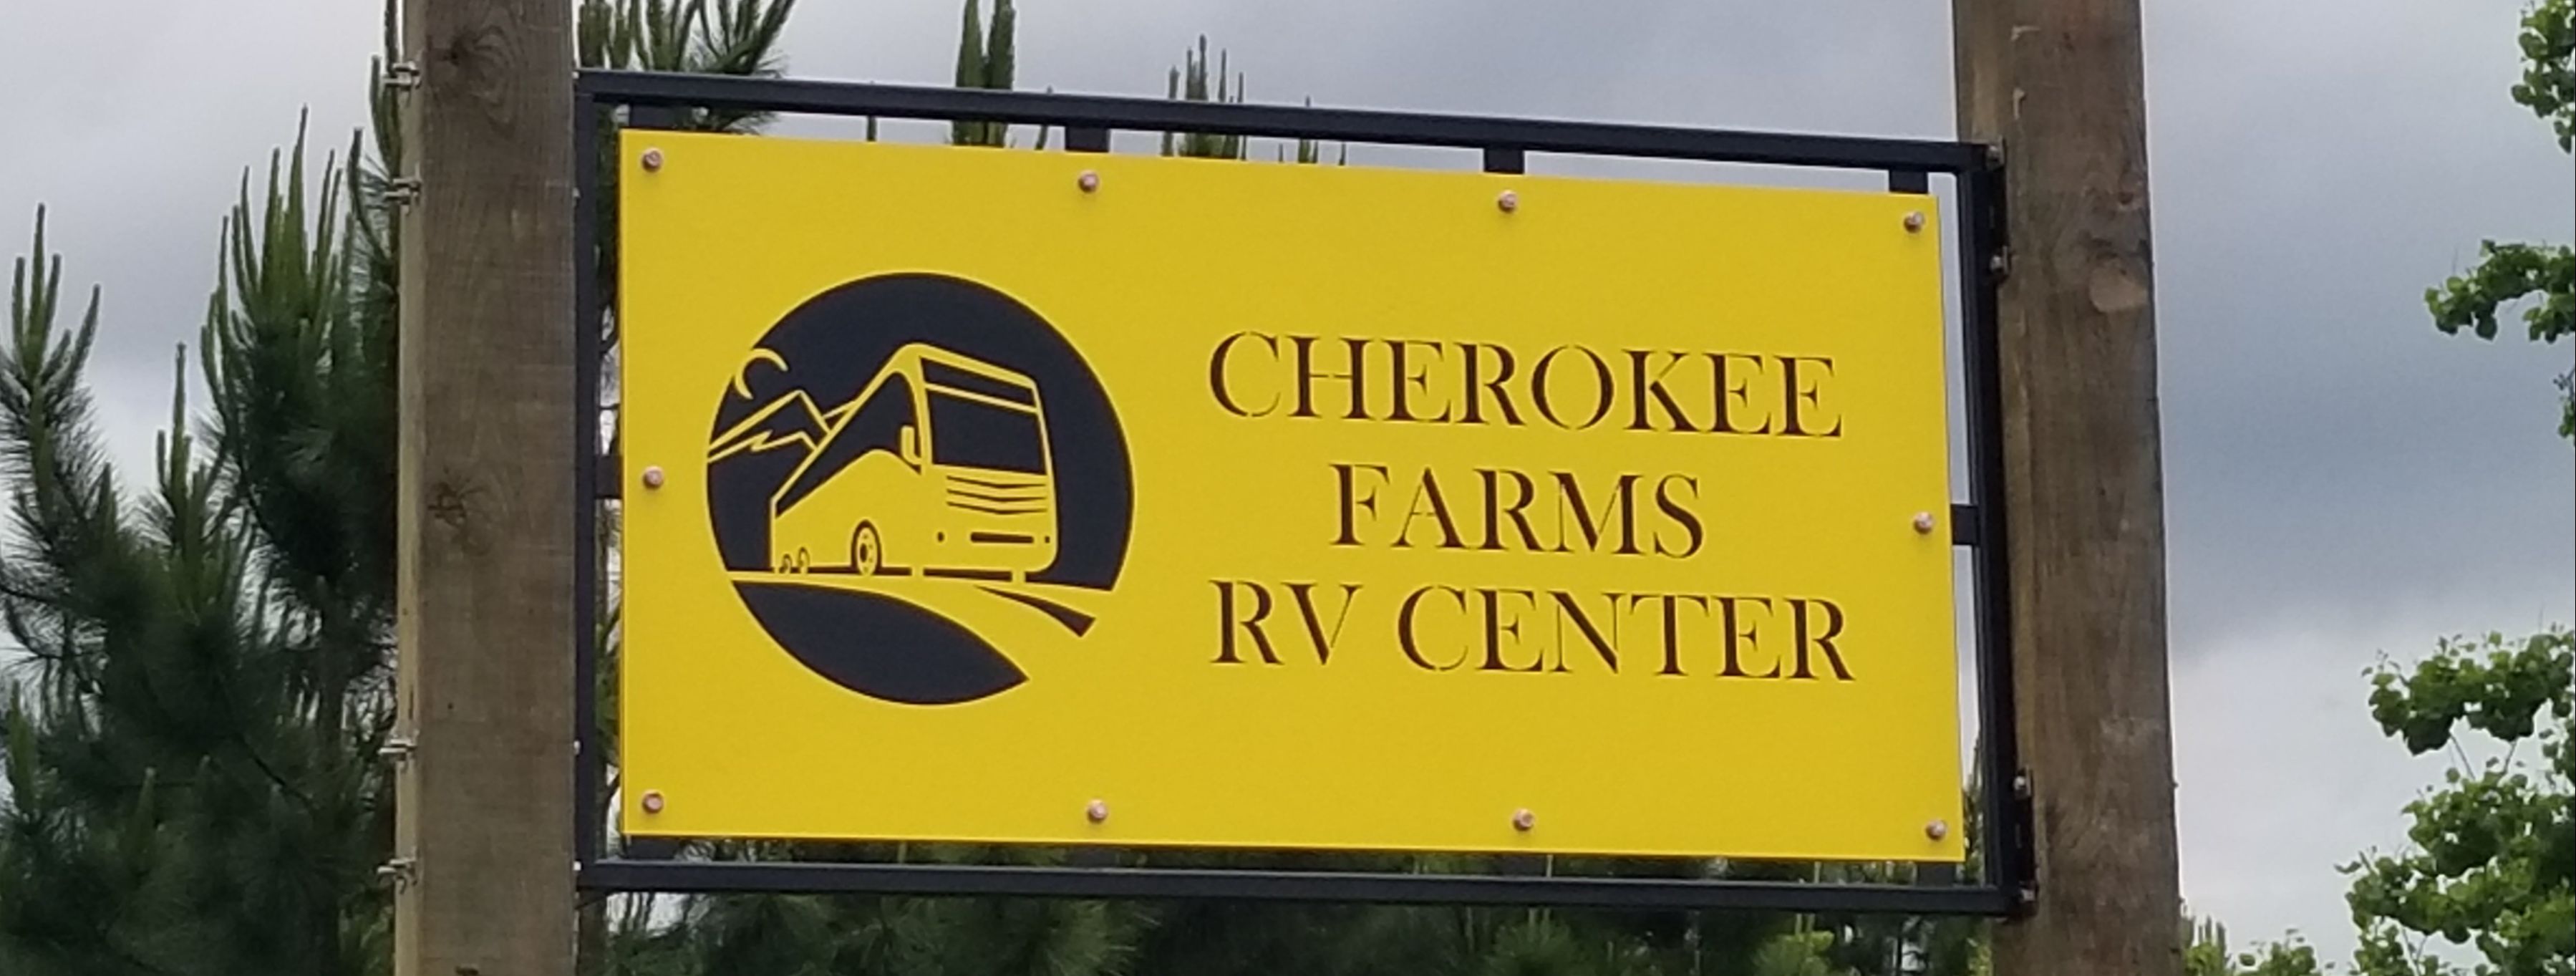 Cherokee Farms Rv Center Rv Repair Parts Storage Foley Al Baldwin County Al